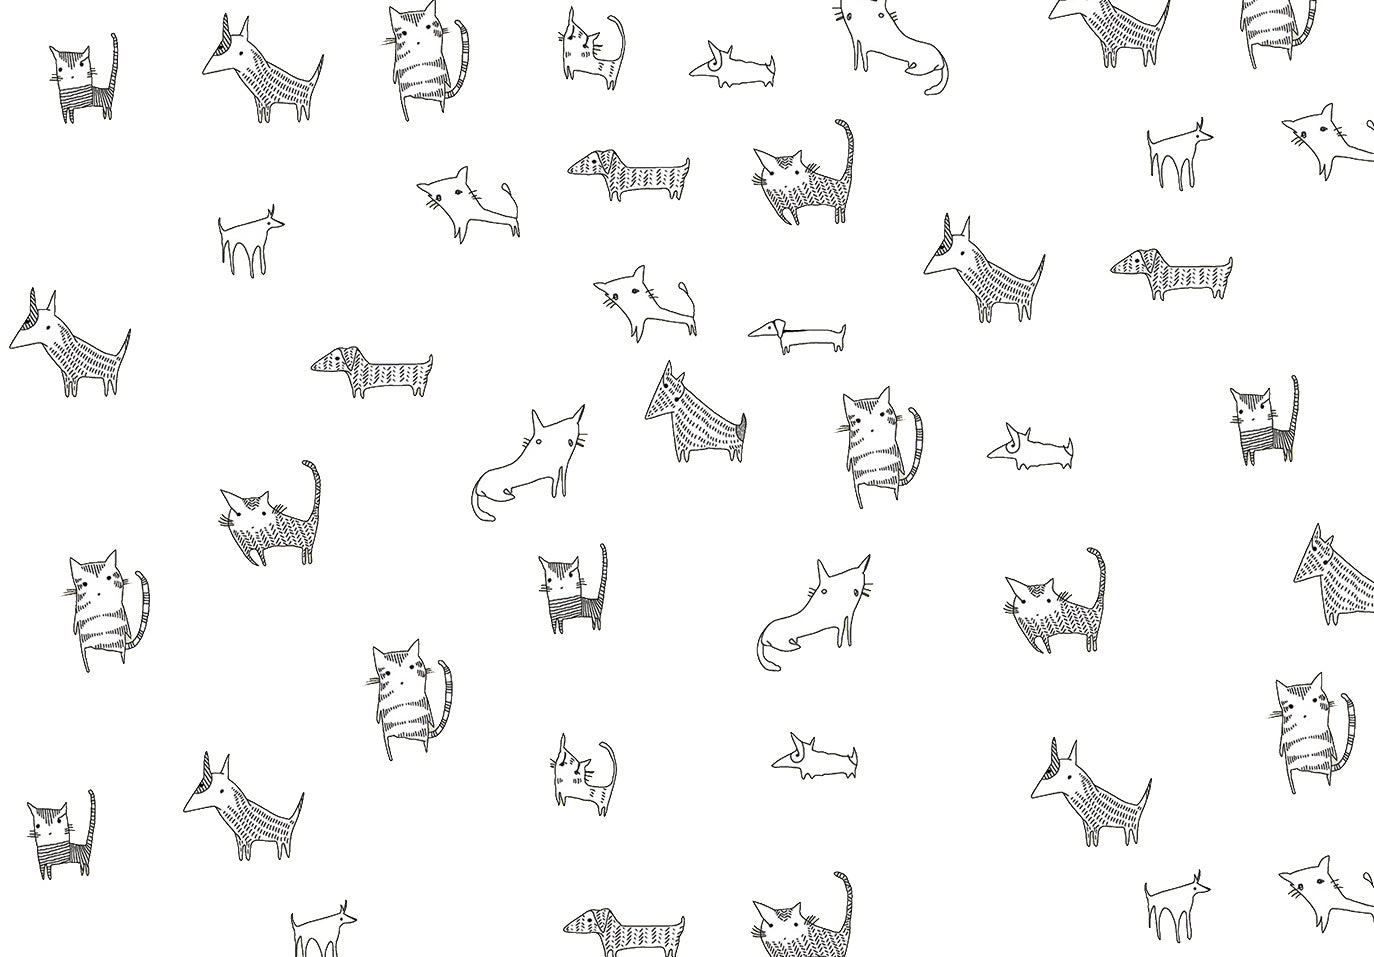 CATS & DOGS DUVAR KAĞIDI Illustration by Deniz Yeğin İkiışık